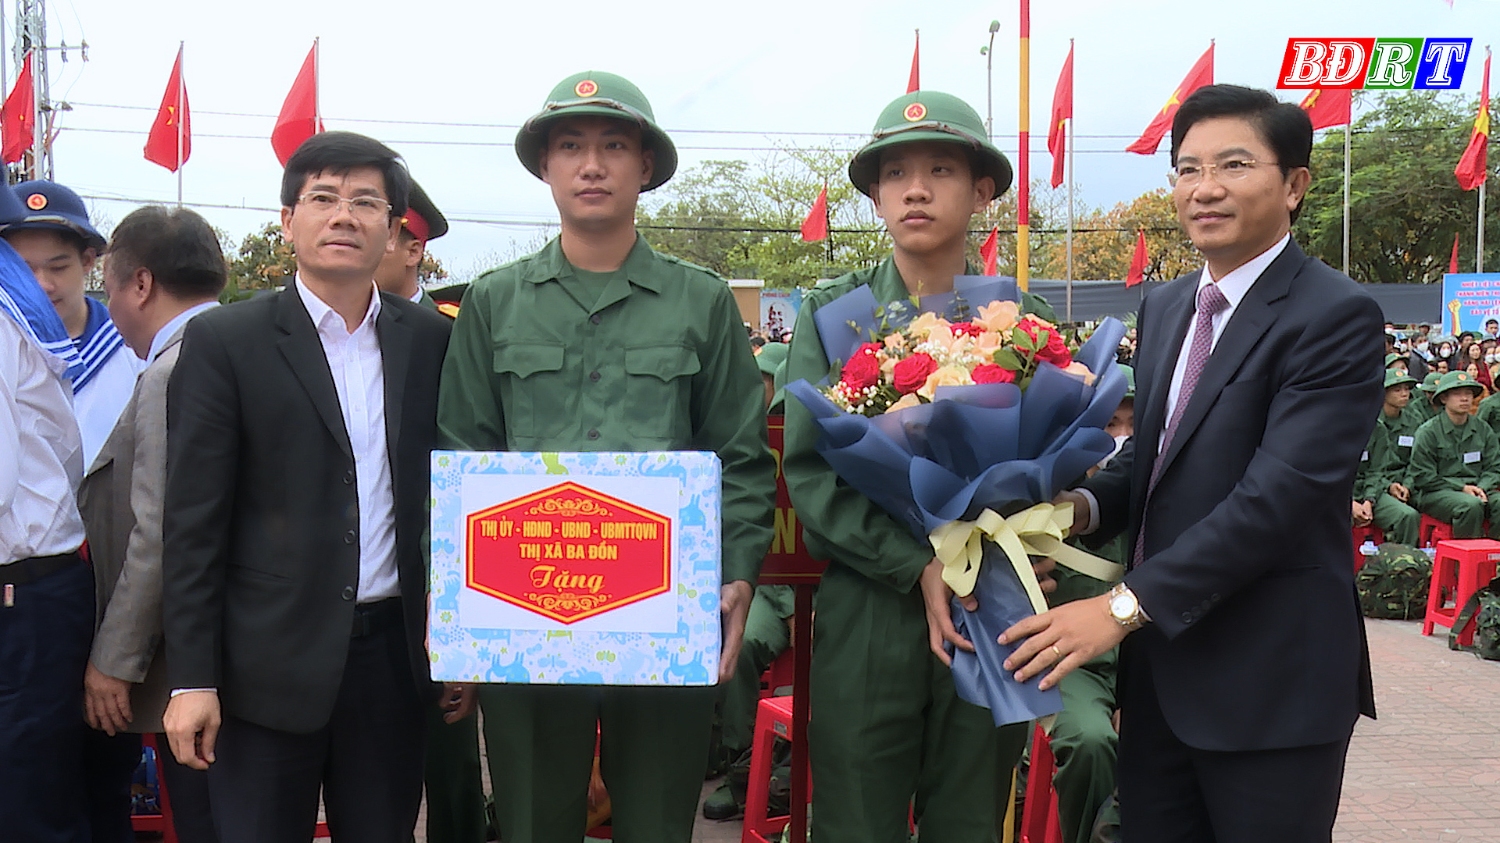 8 Đồng chí Trương An Ninh UVTV Tỉnh ủy Bí thư Thị ủy Ba Đồn tặng quà cho các tân binh lên đường nhập ngũ